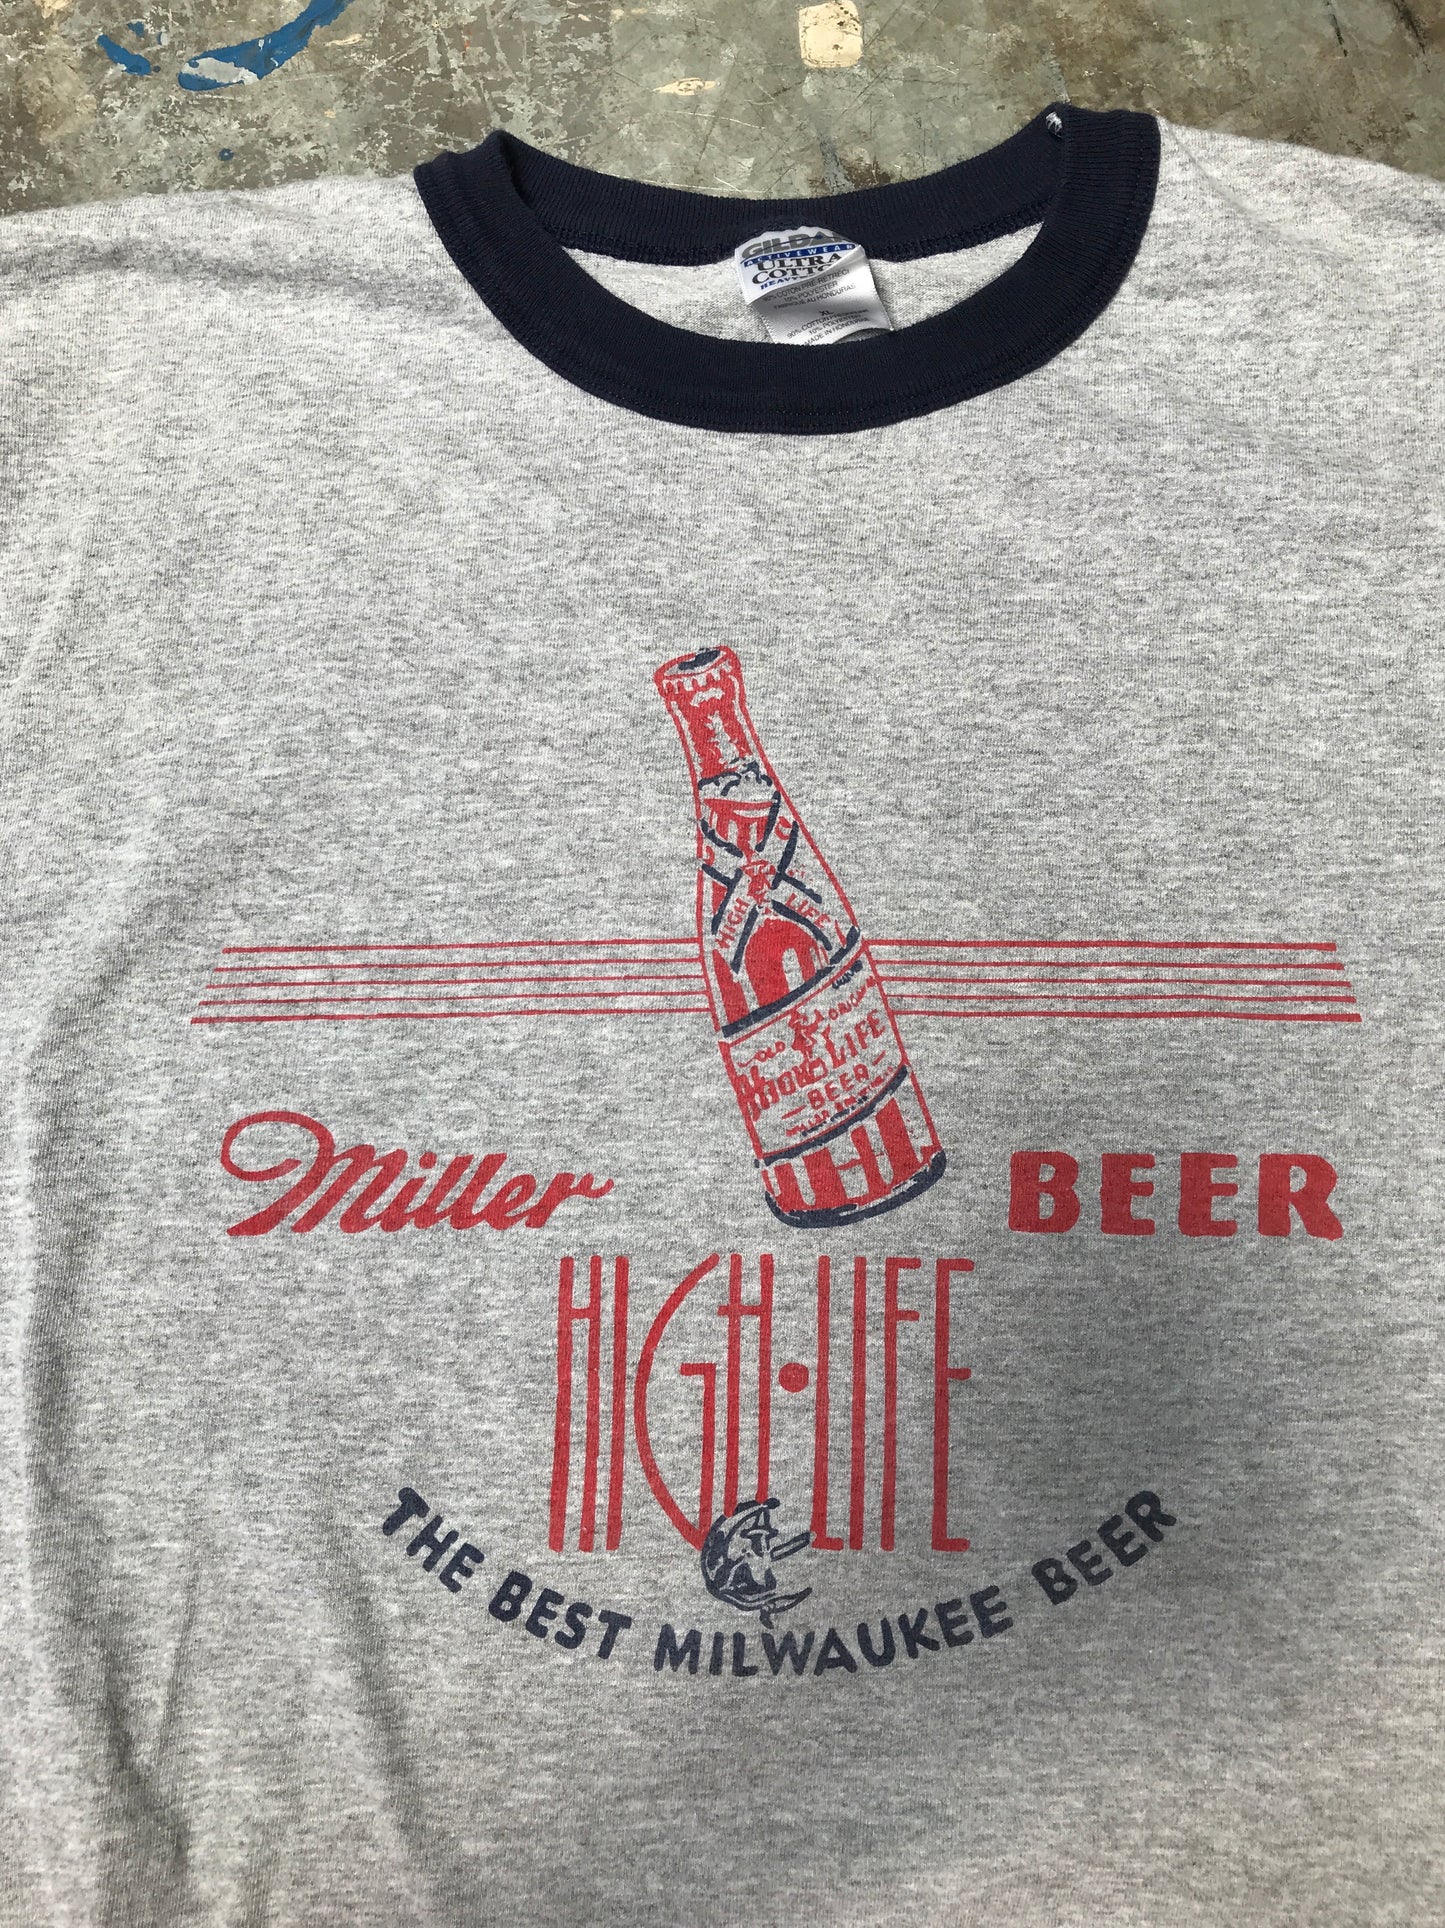 Vintage Miller T-shirt